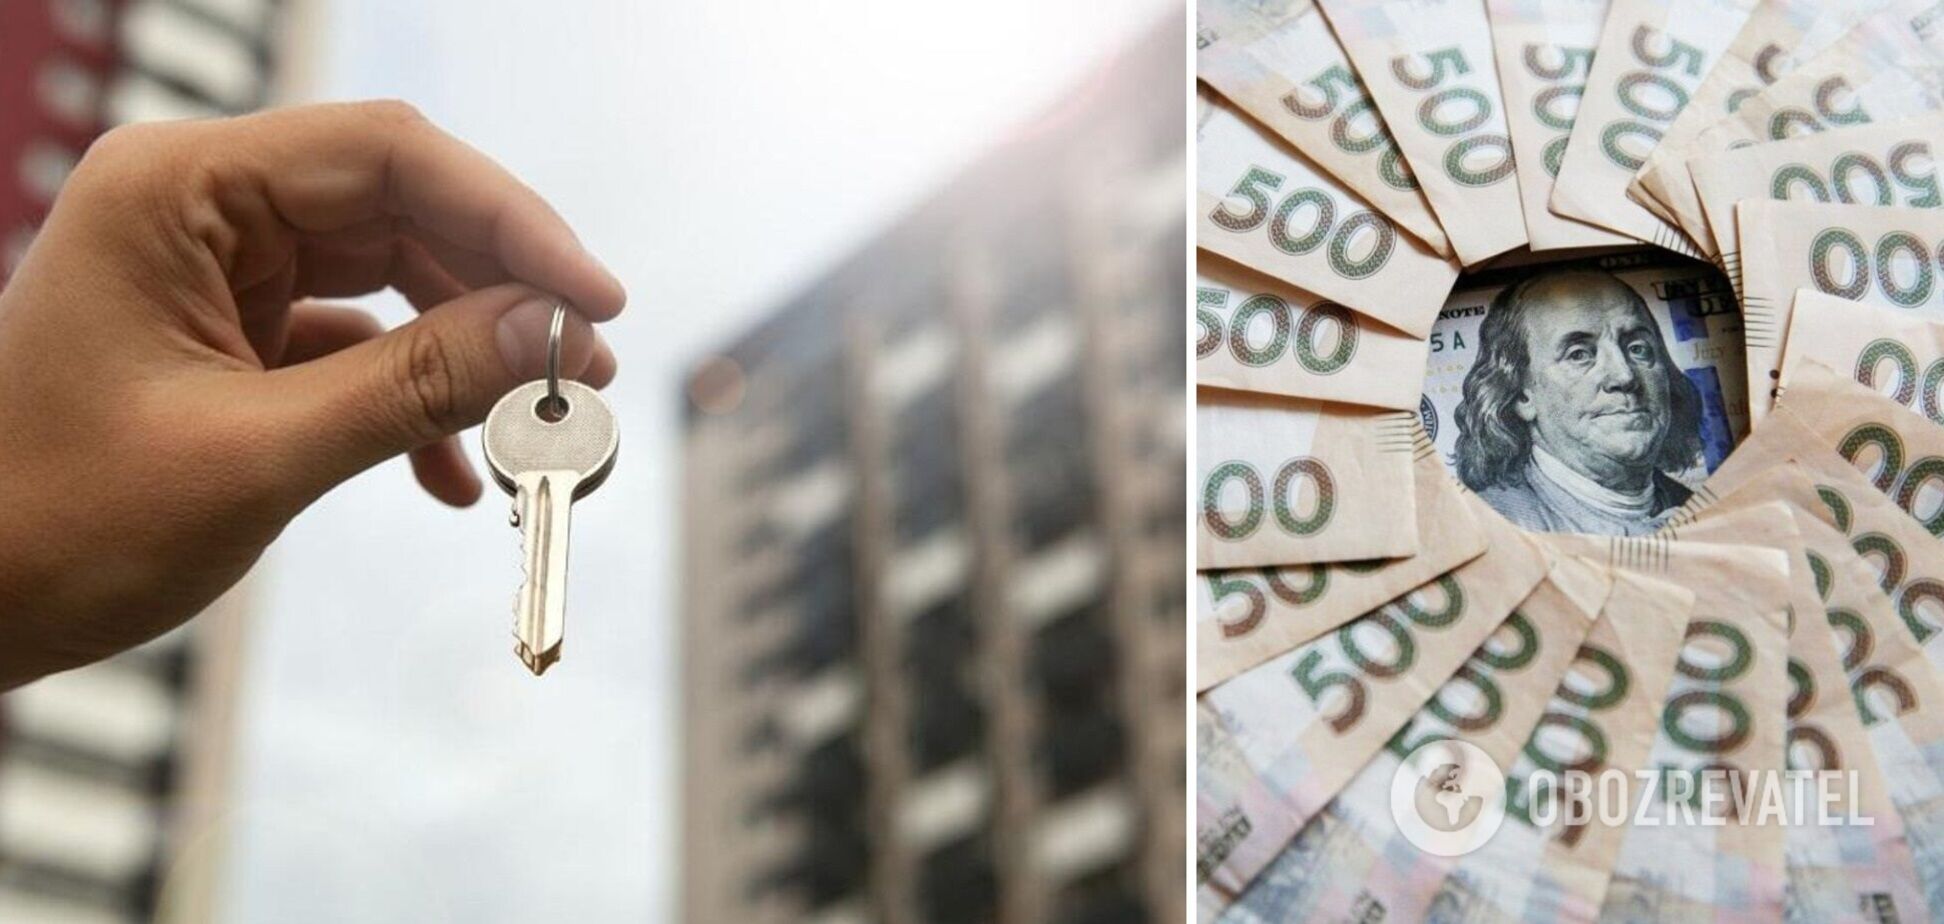 Ринок нерухомості в Україні дуже зміниться, вважає експерт